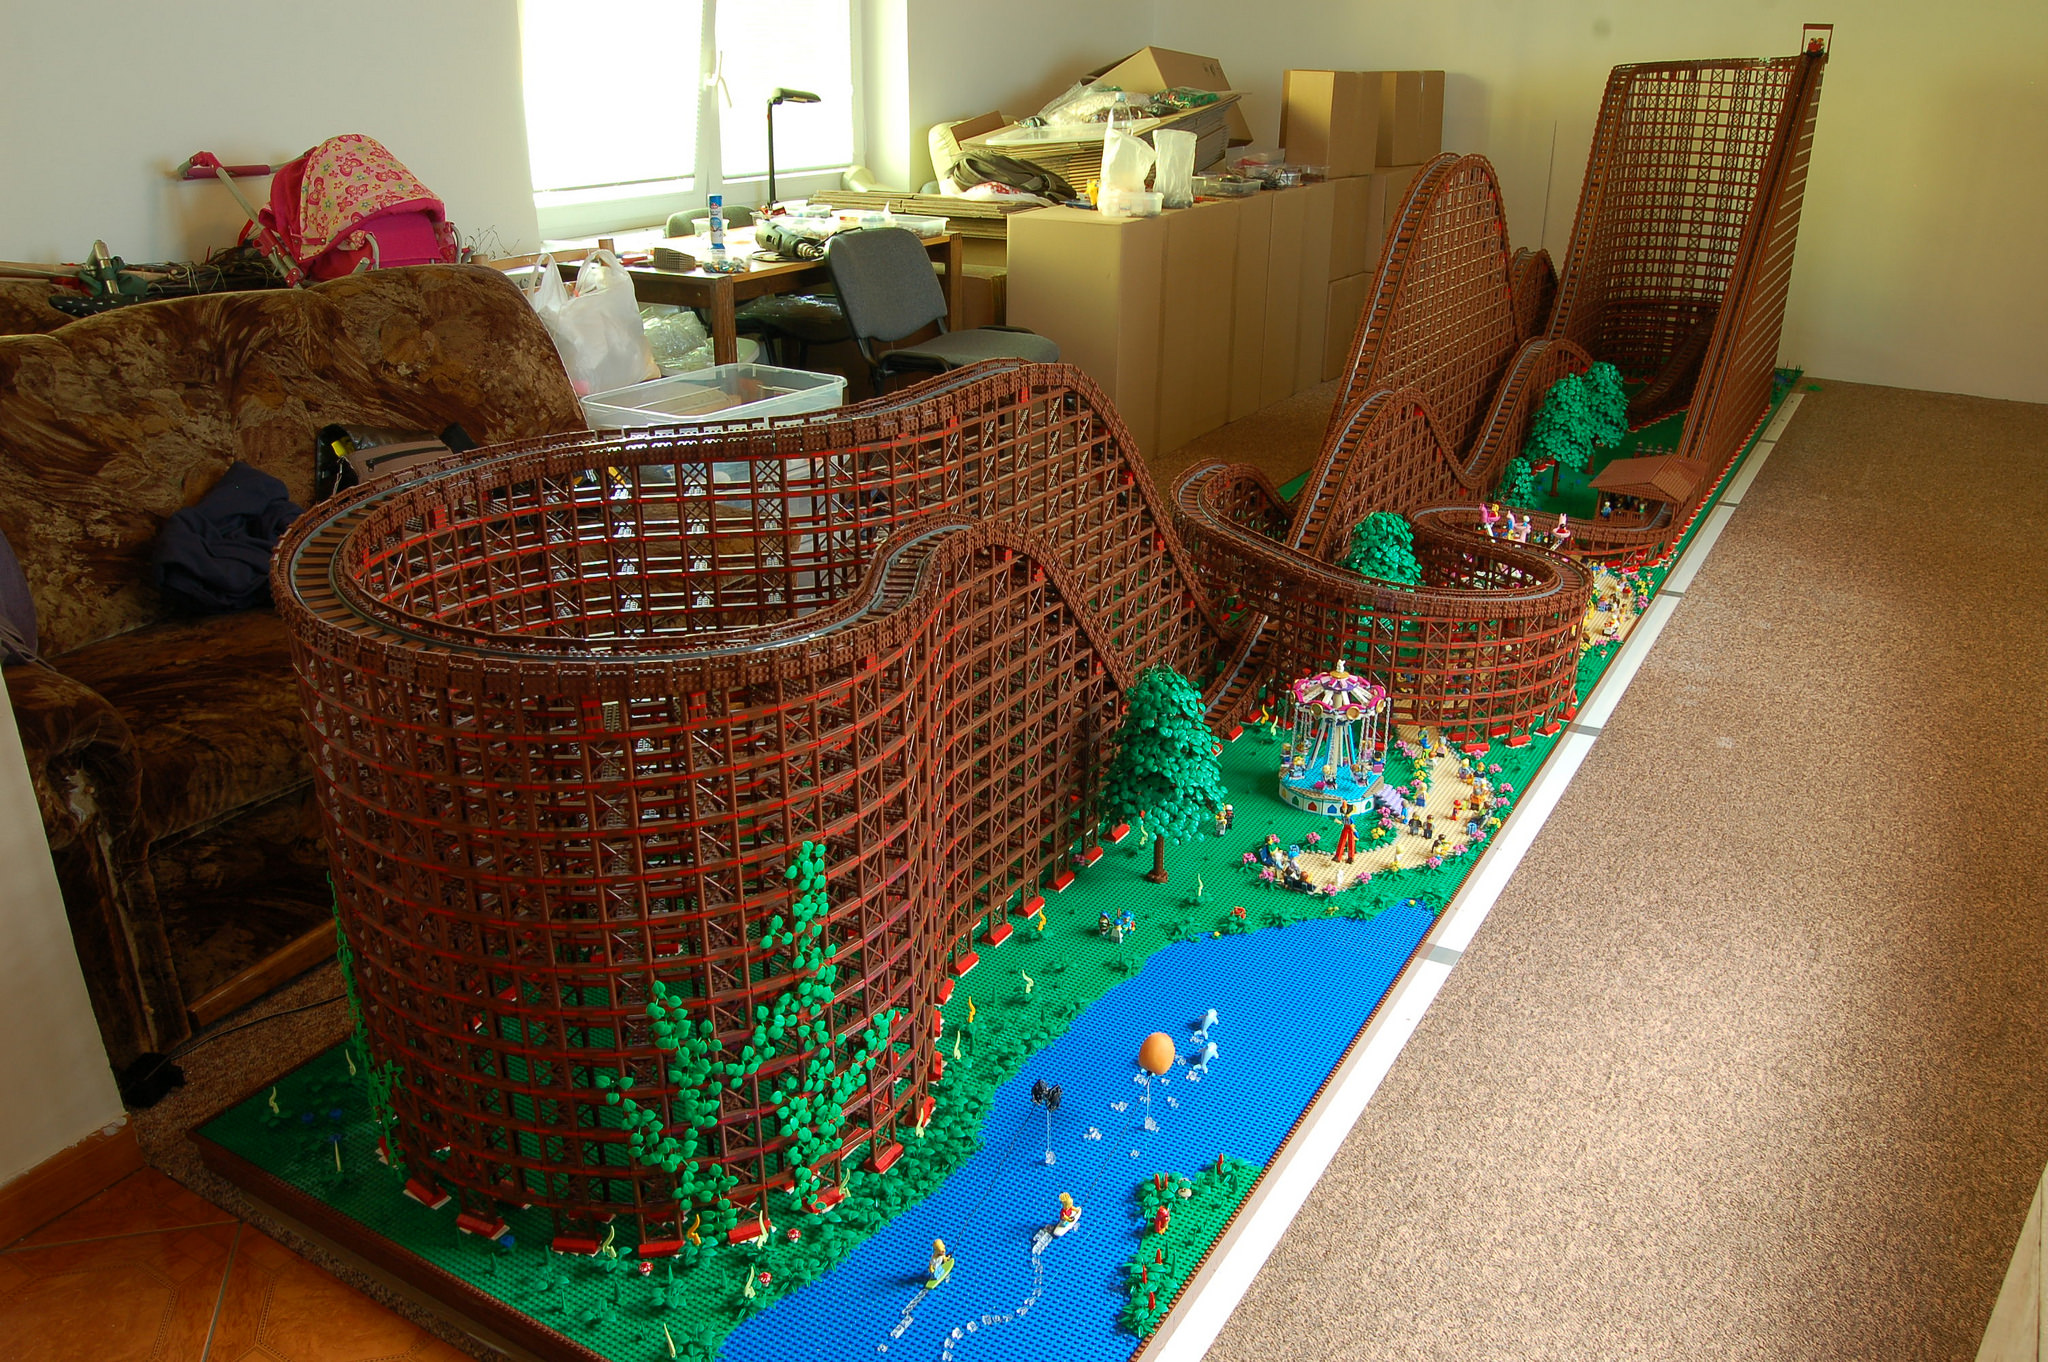 El Toro montaña rusa realizada con LEGO